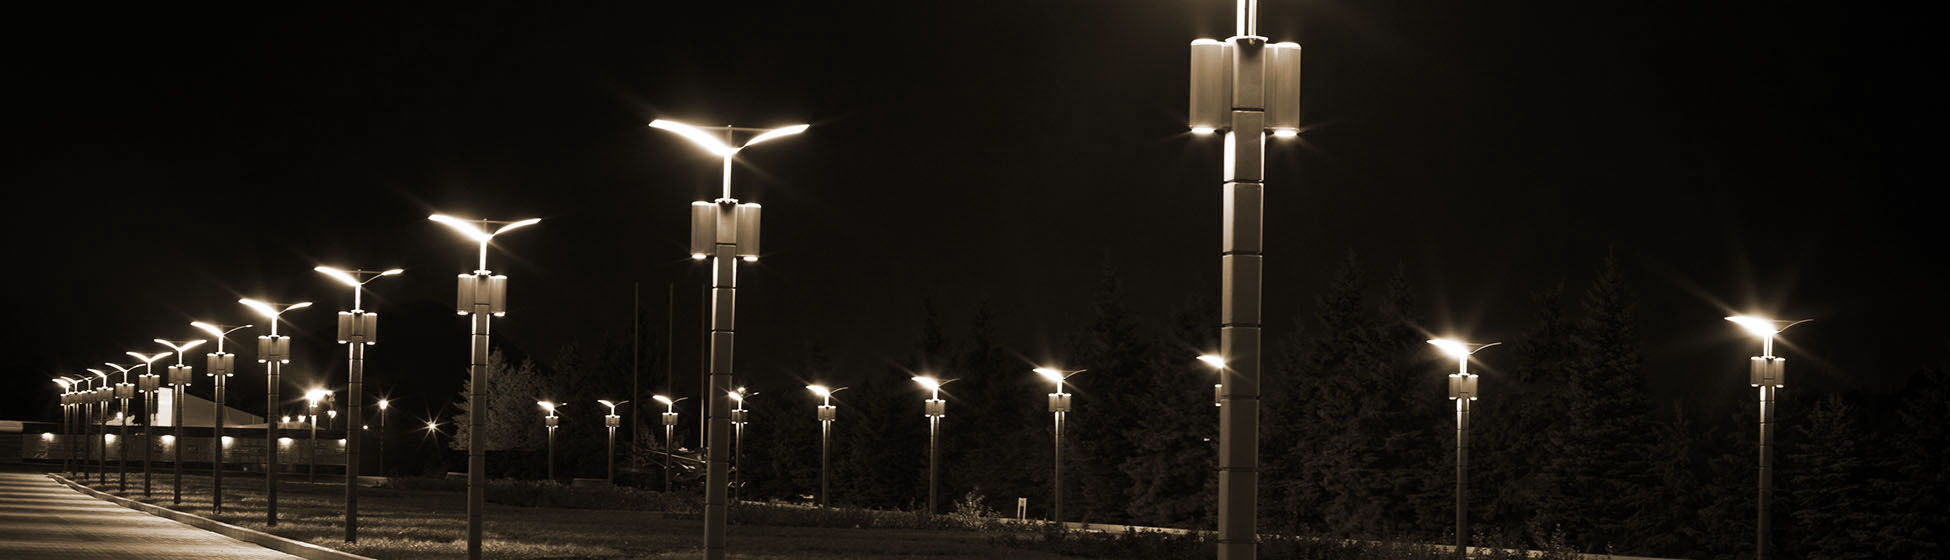 Lampe led eclairage public